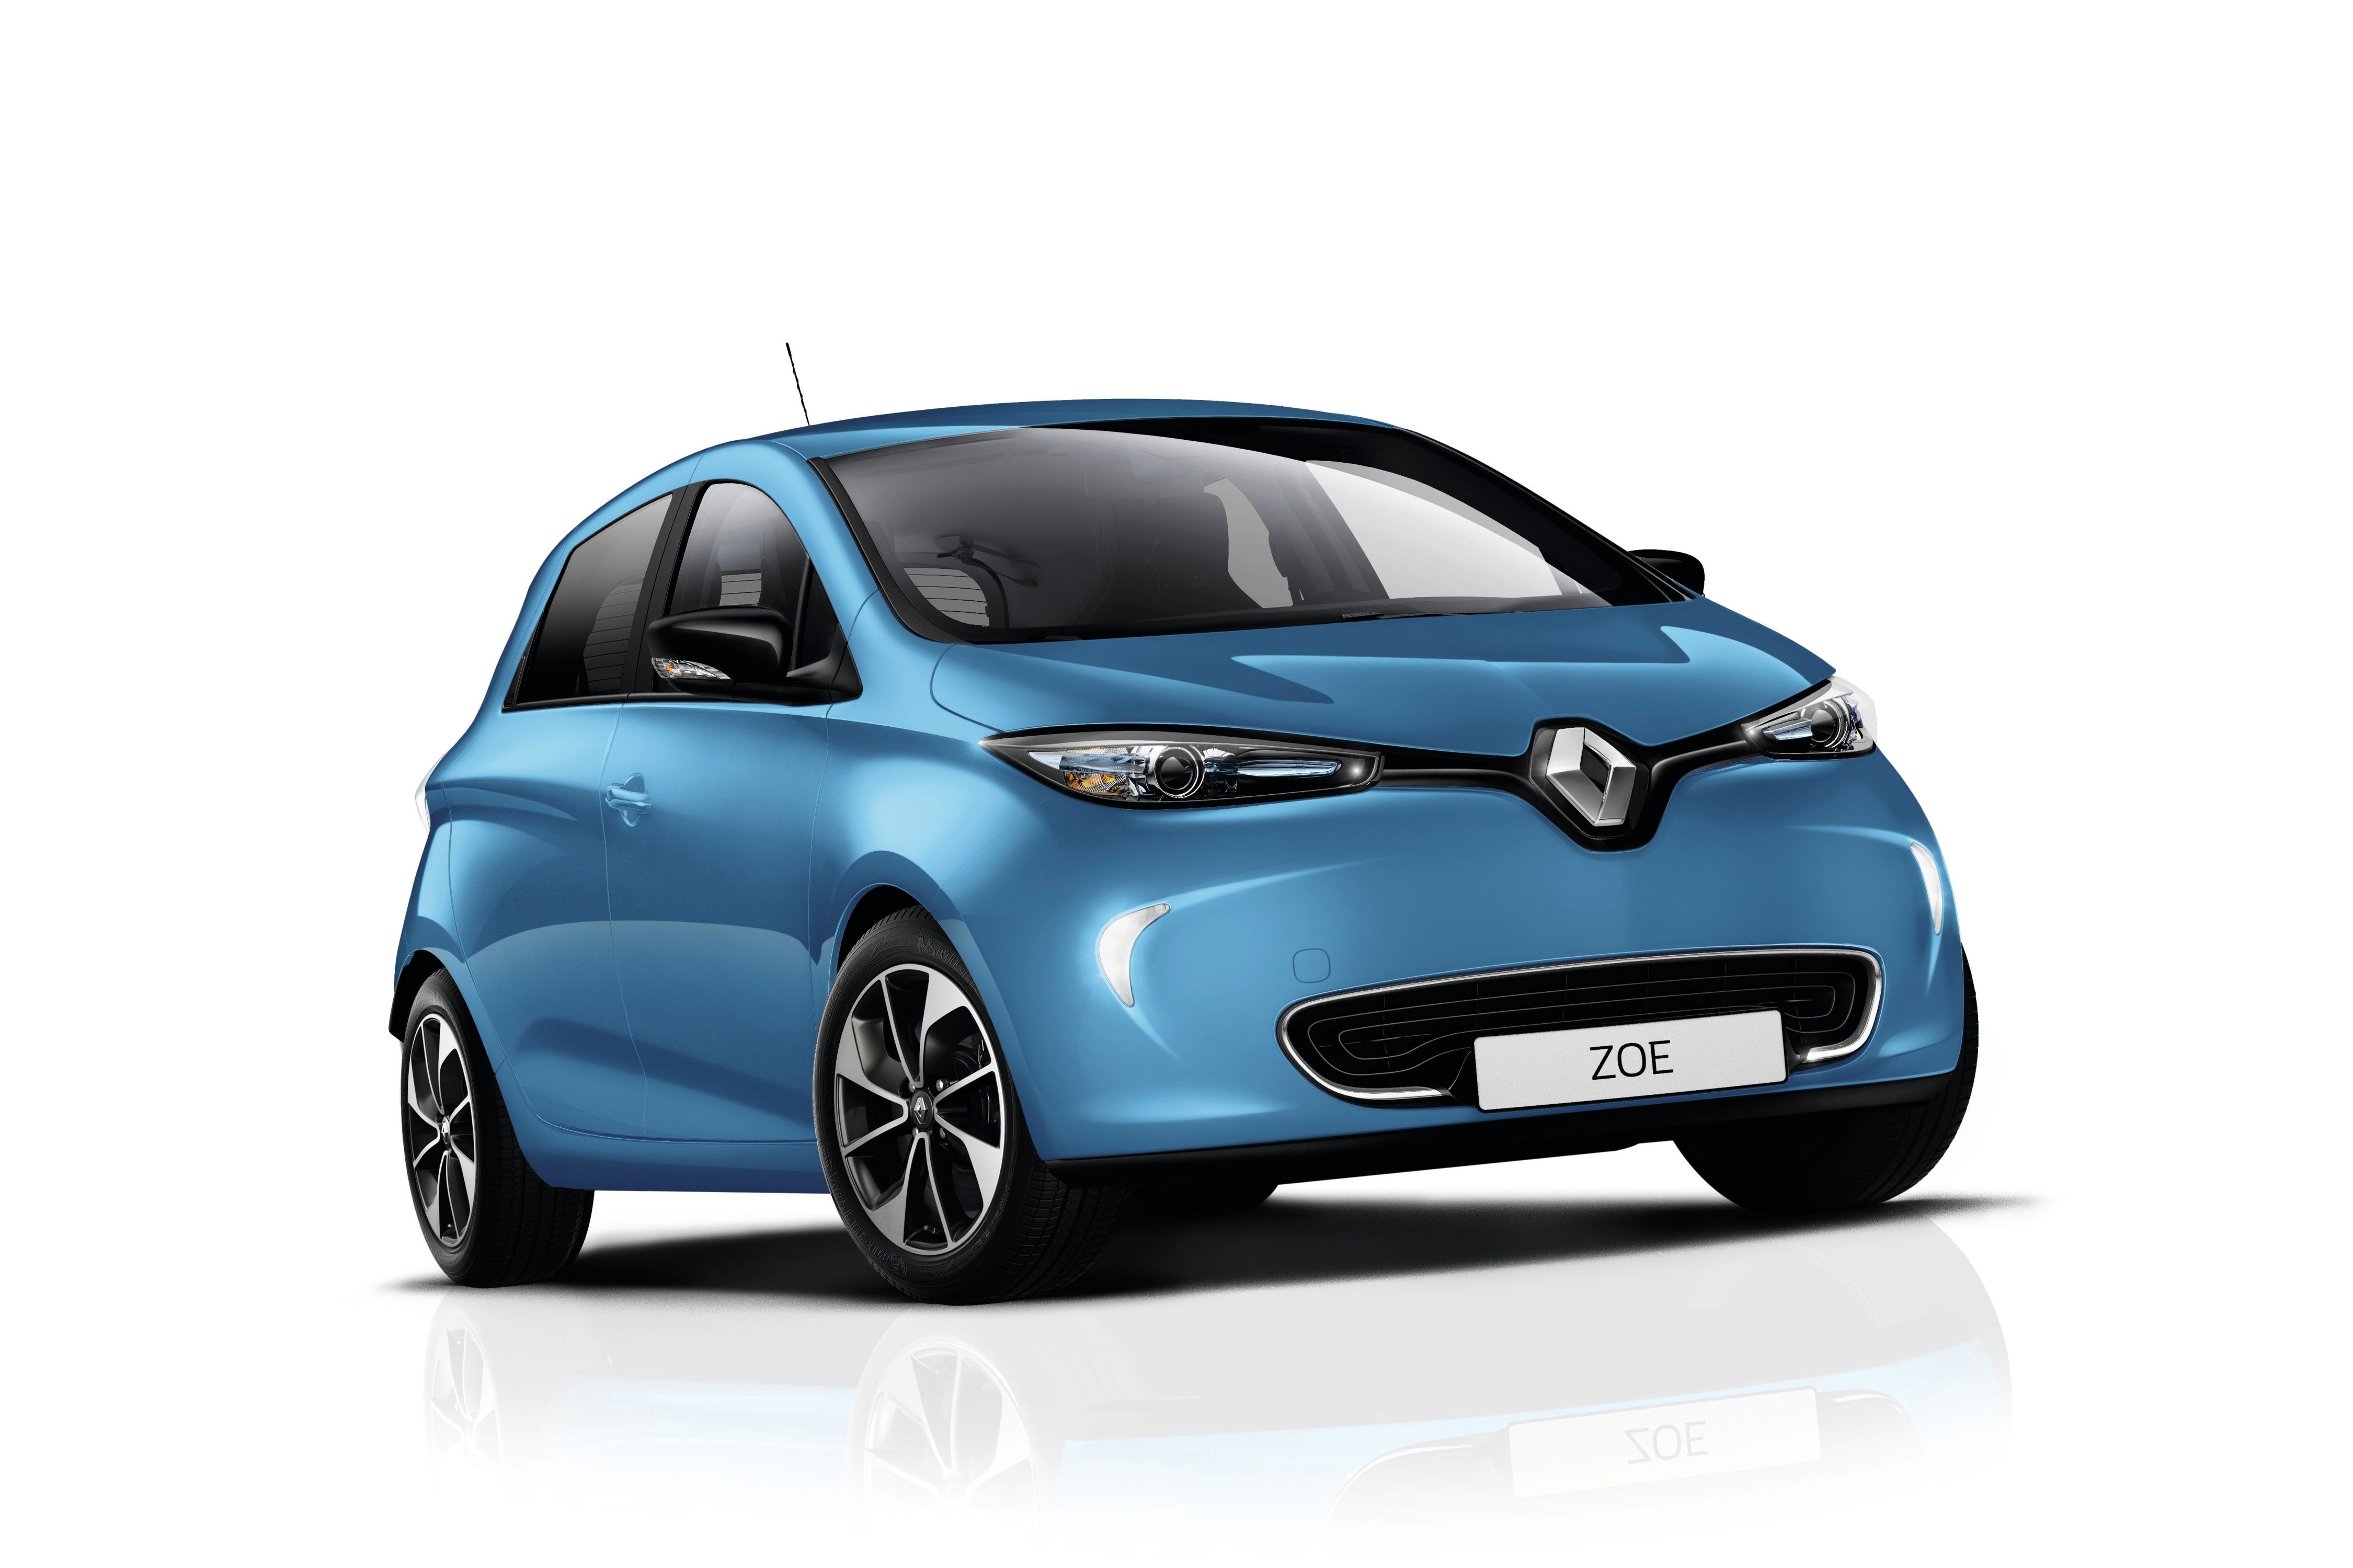 Im Dezember 2016 war das Elektroauto Renault Zoe auf Platz 1 der Neuzulassungen. Ab dem 1. Oktober kann das Elektroauto Renault Zoe auch mit einer Reichweite von 400 Kilometern bestellt werden. Bildquelle: Renault